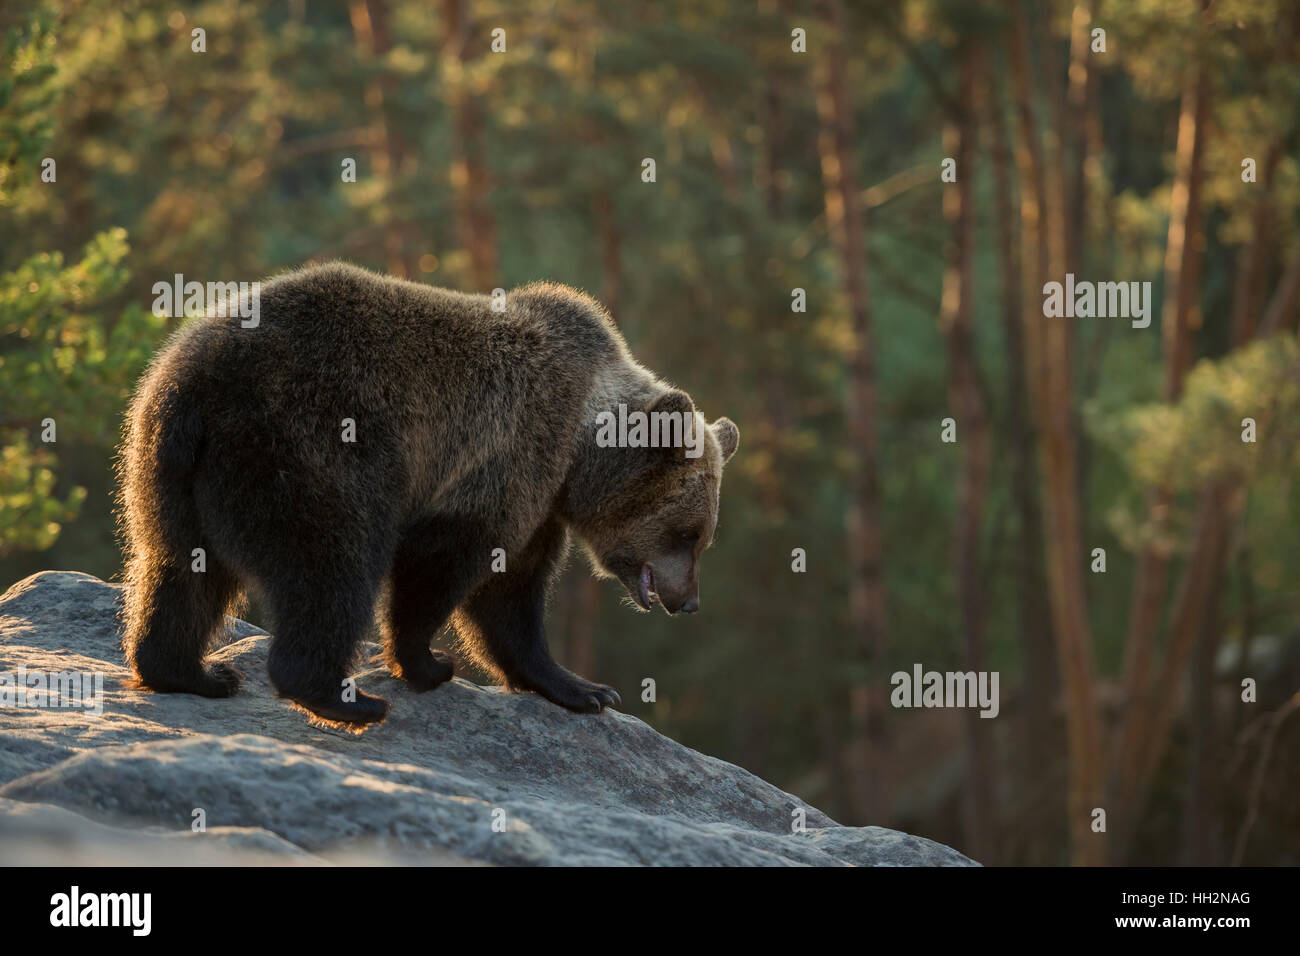 Ours brun européen / Braunbaer ( Ursus arctos ), se dresse sur un rocher dans la montagne, regardant vers le bas, l'exploration de son environnement. Banque D'Images